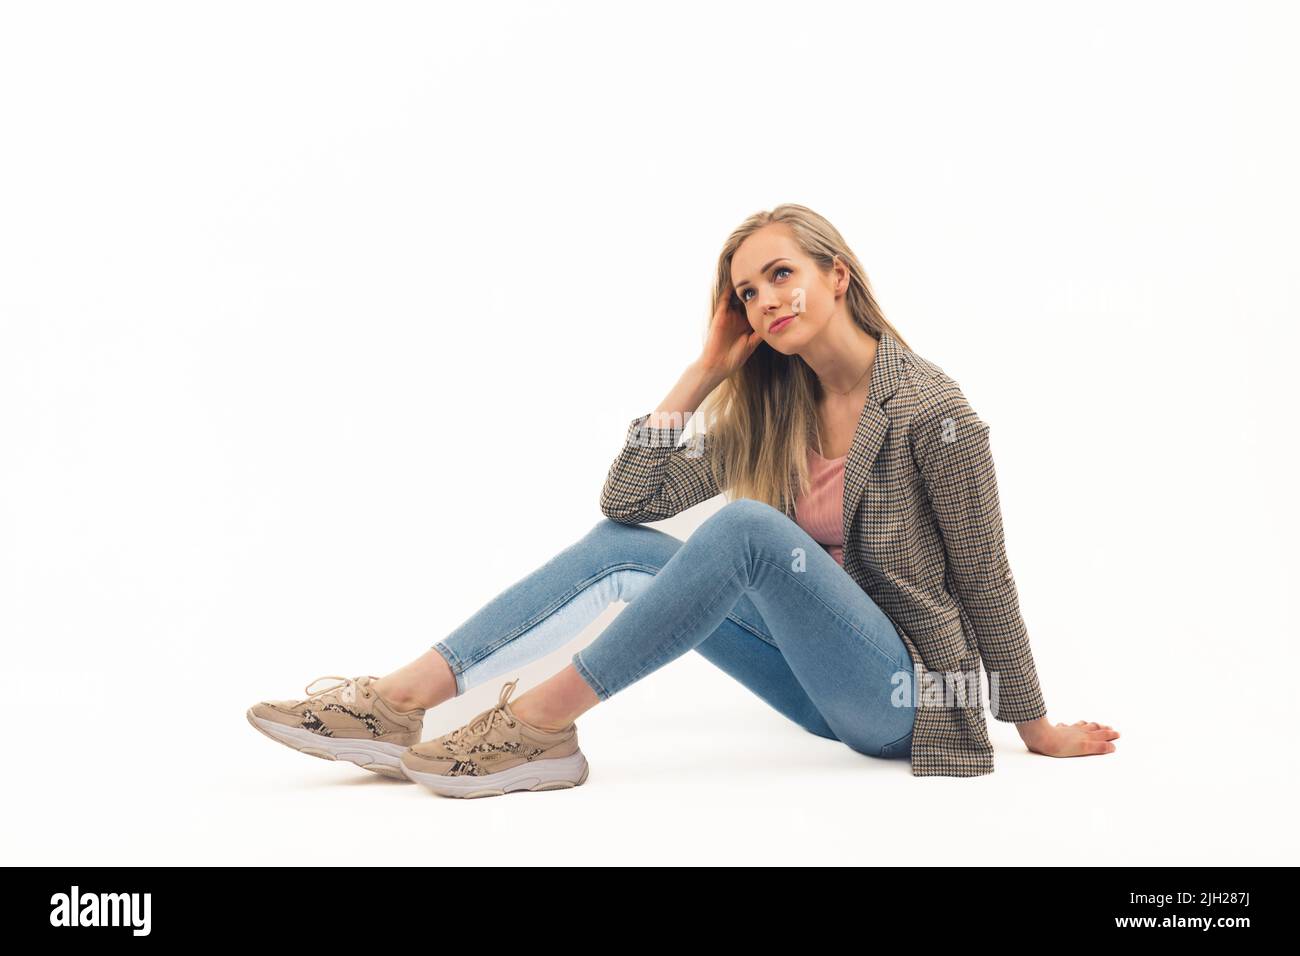 Femme blonde jeune adulte en Jean et blazer à carreaux assis au sol sur fond blanc et regardant avec un sourire doux. Prise de vue en studio avec espace de copie isolé. Photo de haute qualité Banque D'Images